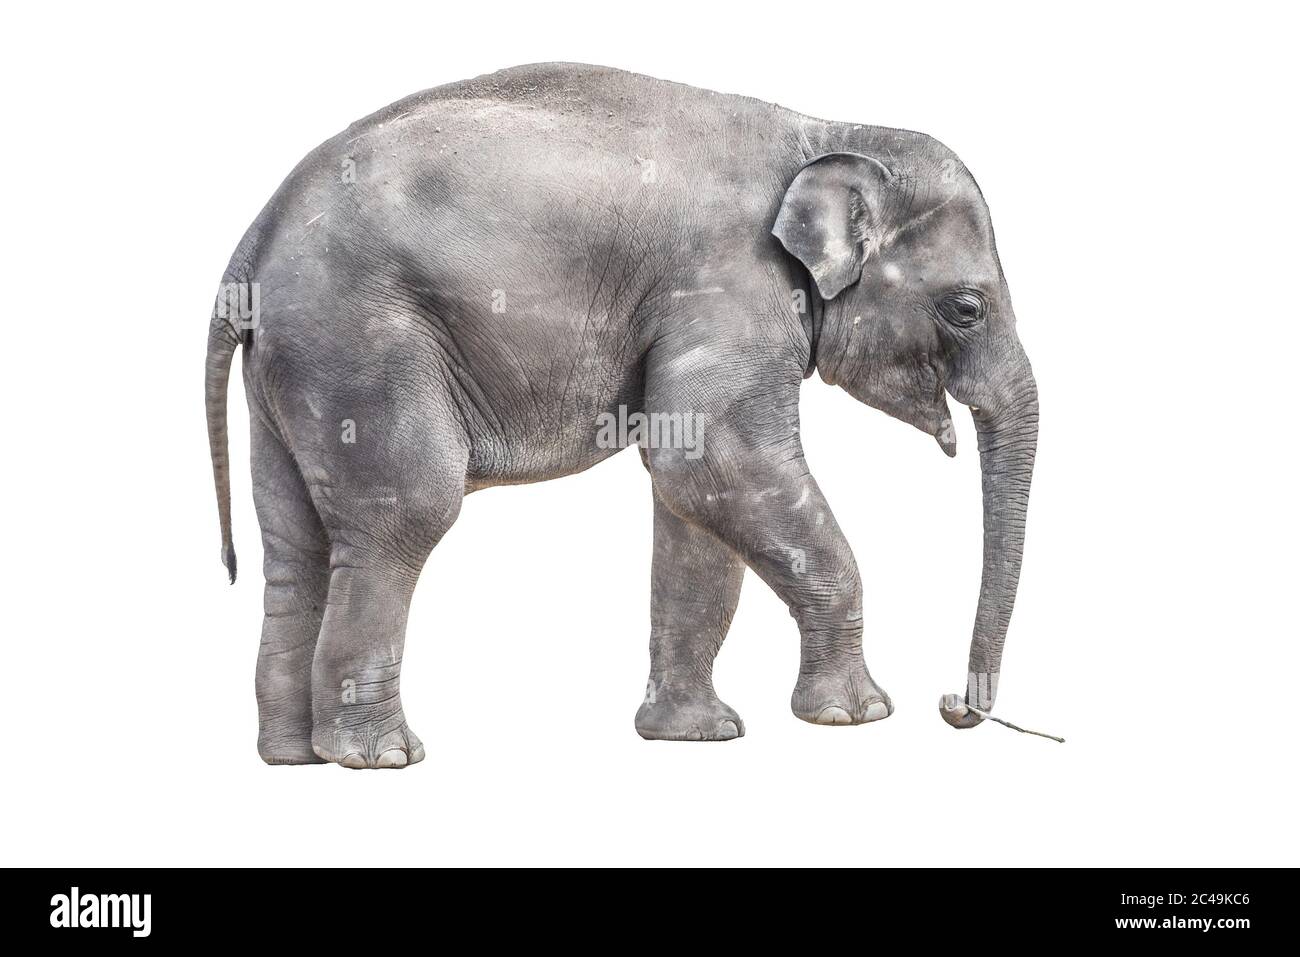 Jeune éléphant de bébé jouant avec un petit bâton de bois dans le tronc. Isolé sur fond blanc. Banque D'Images